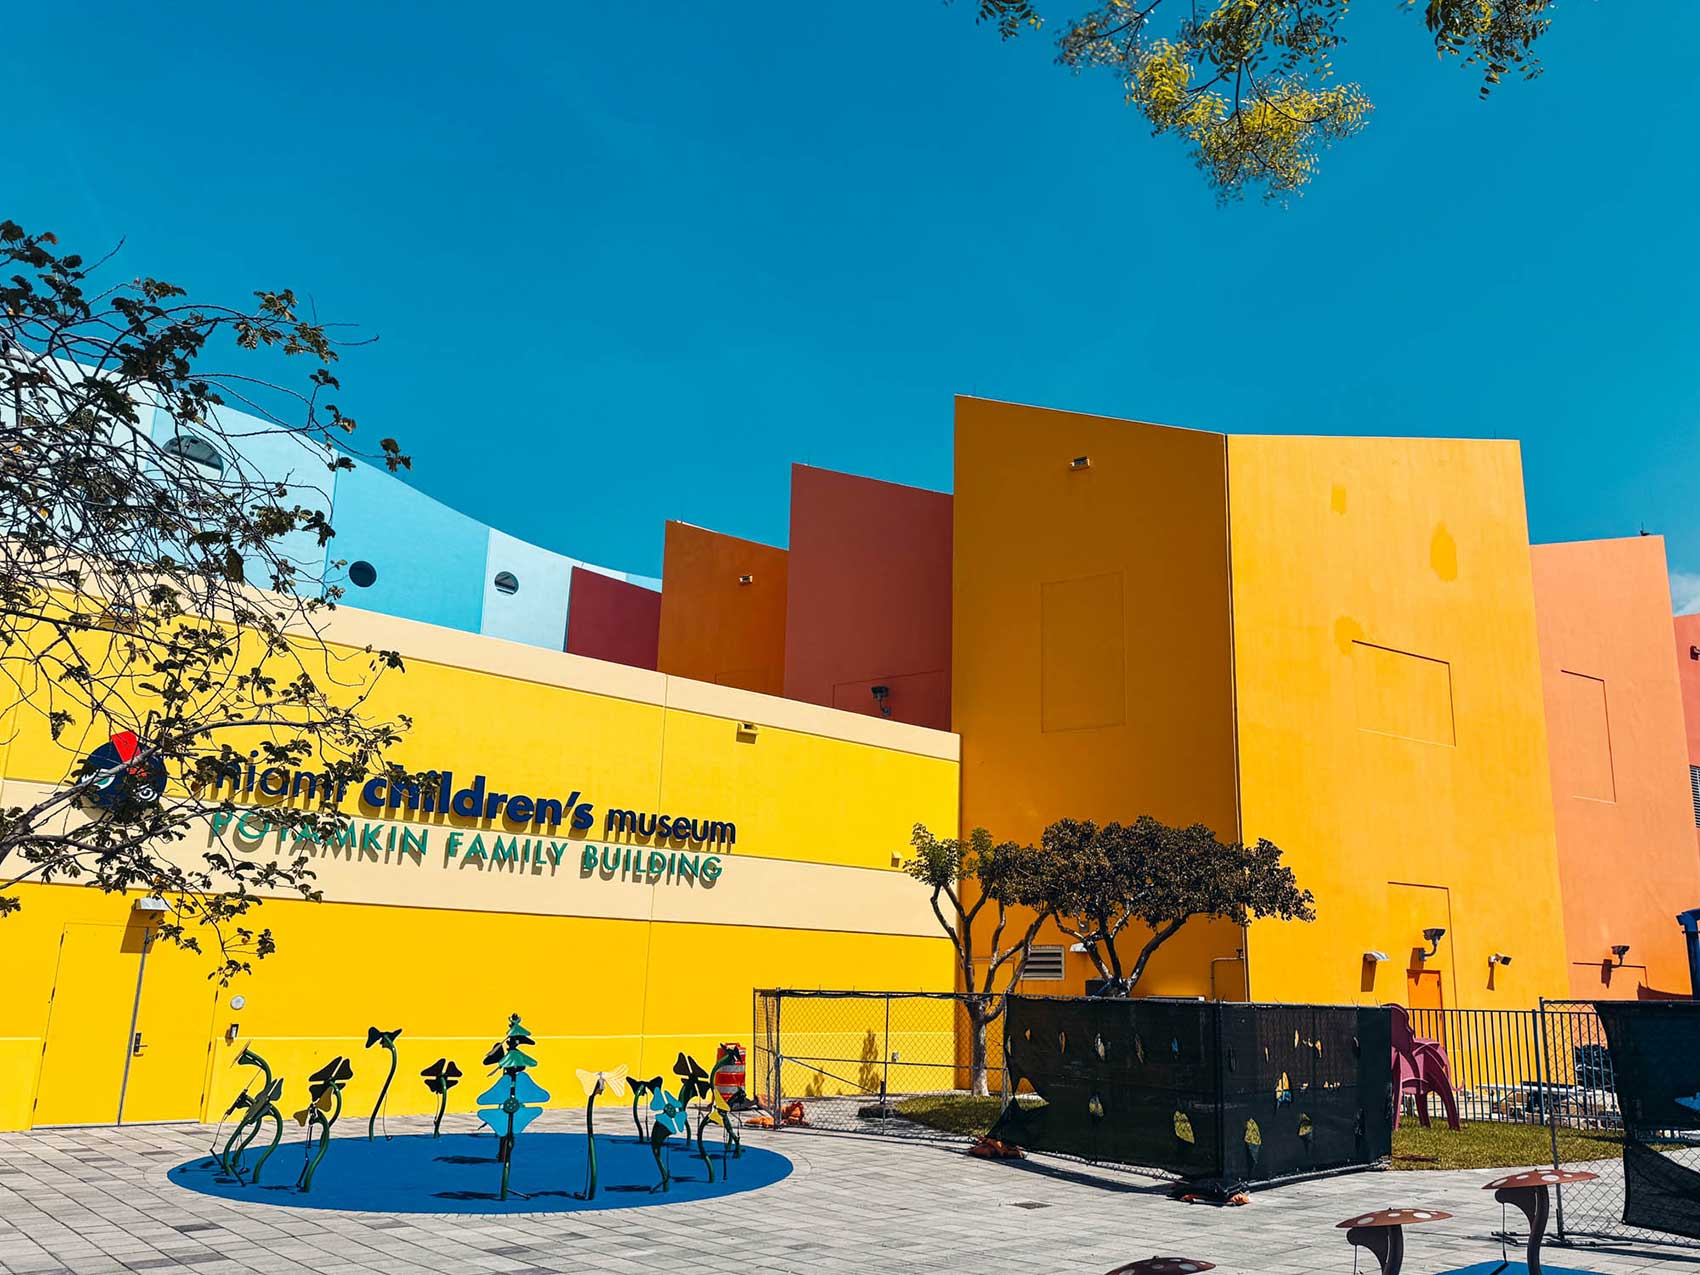 Miami Childrens Museum, Florida.